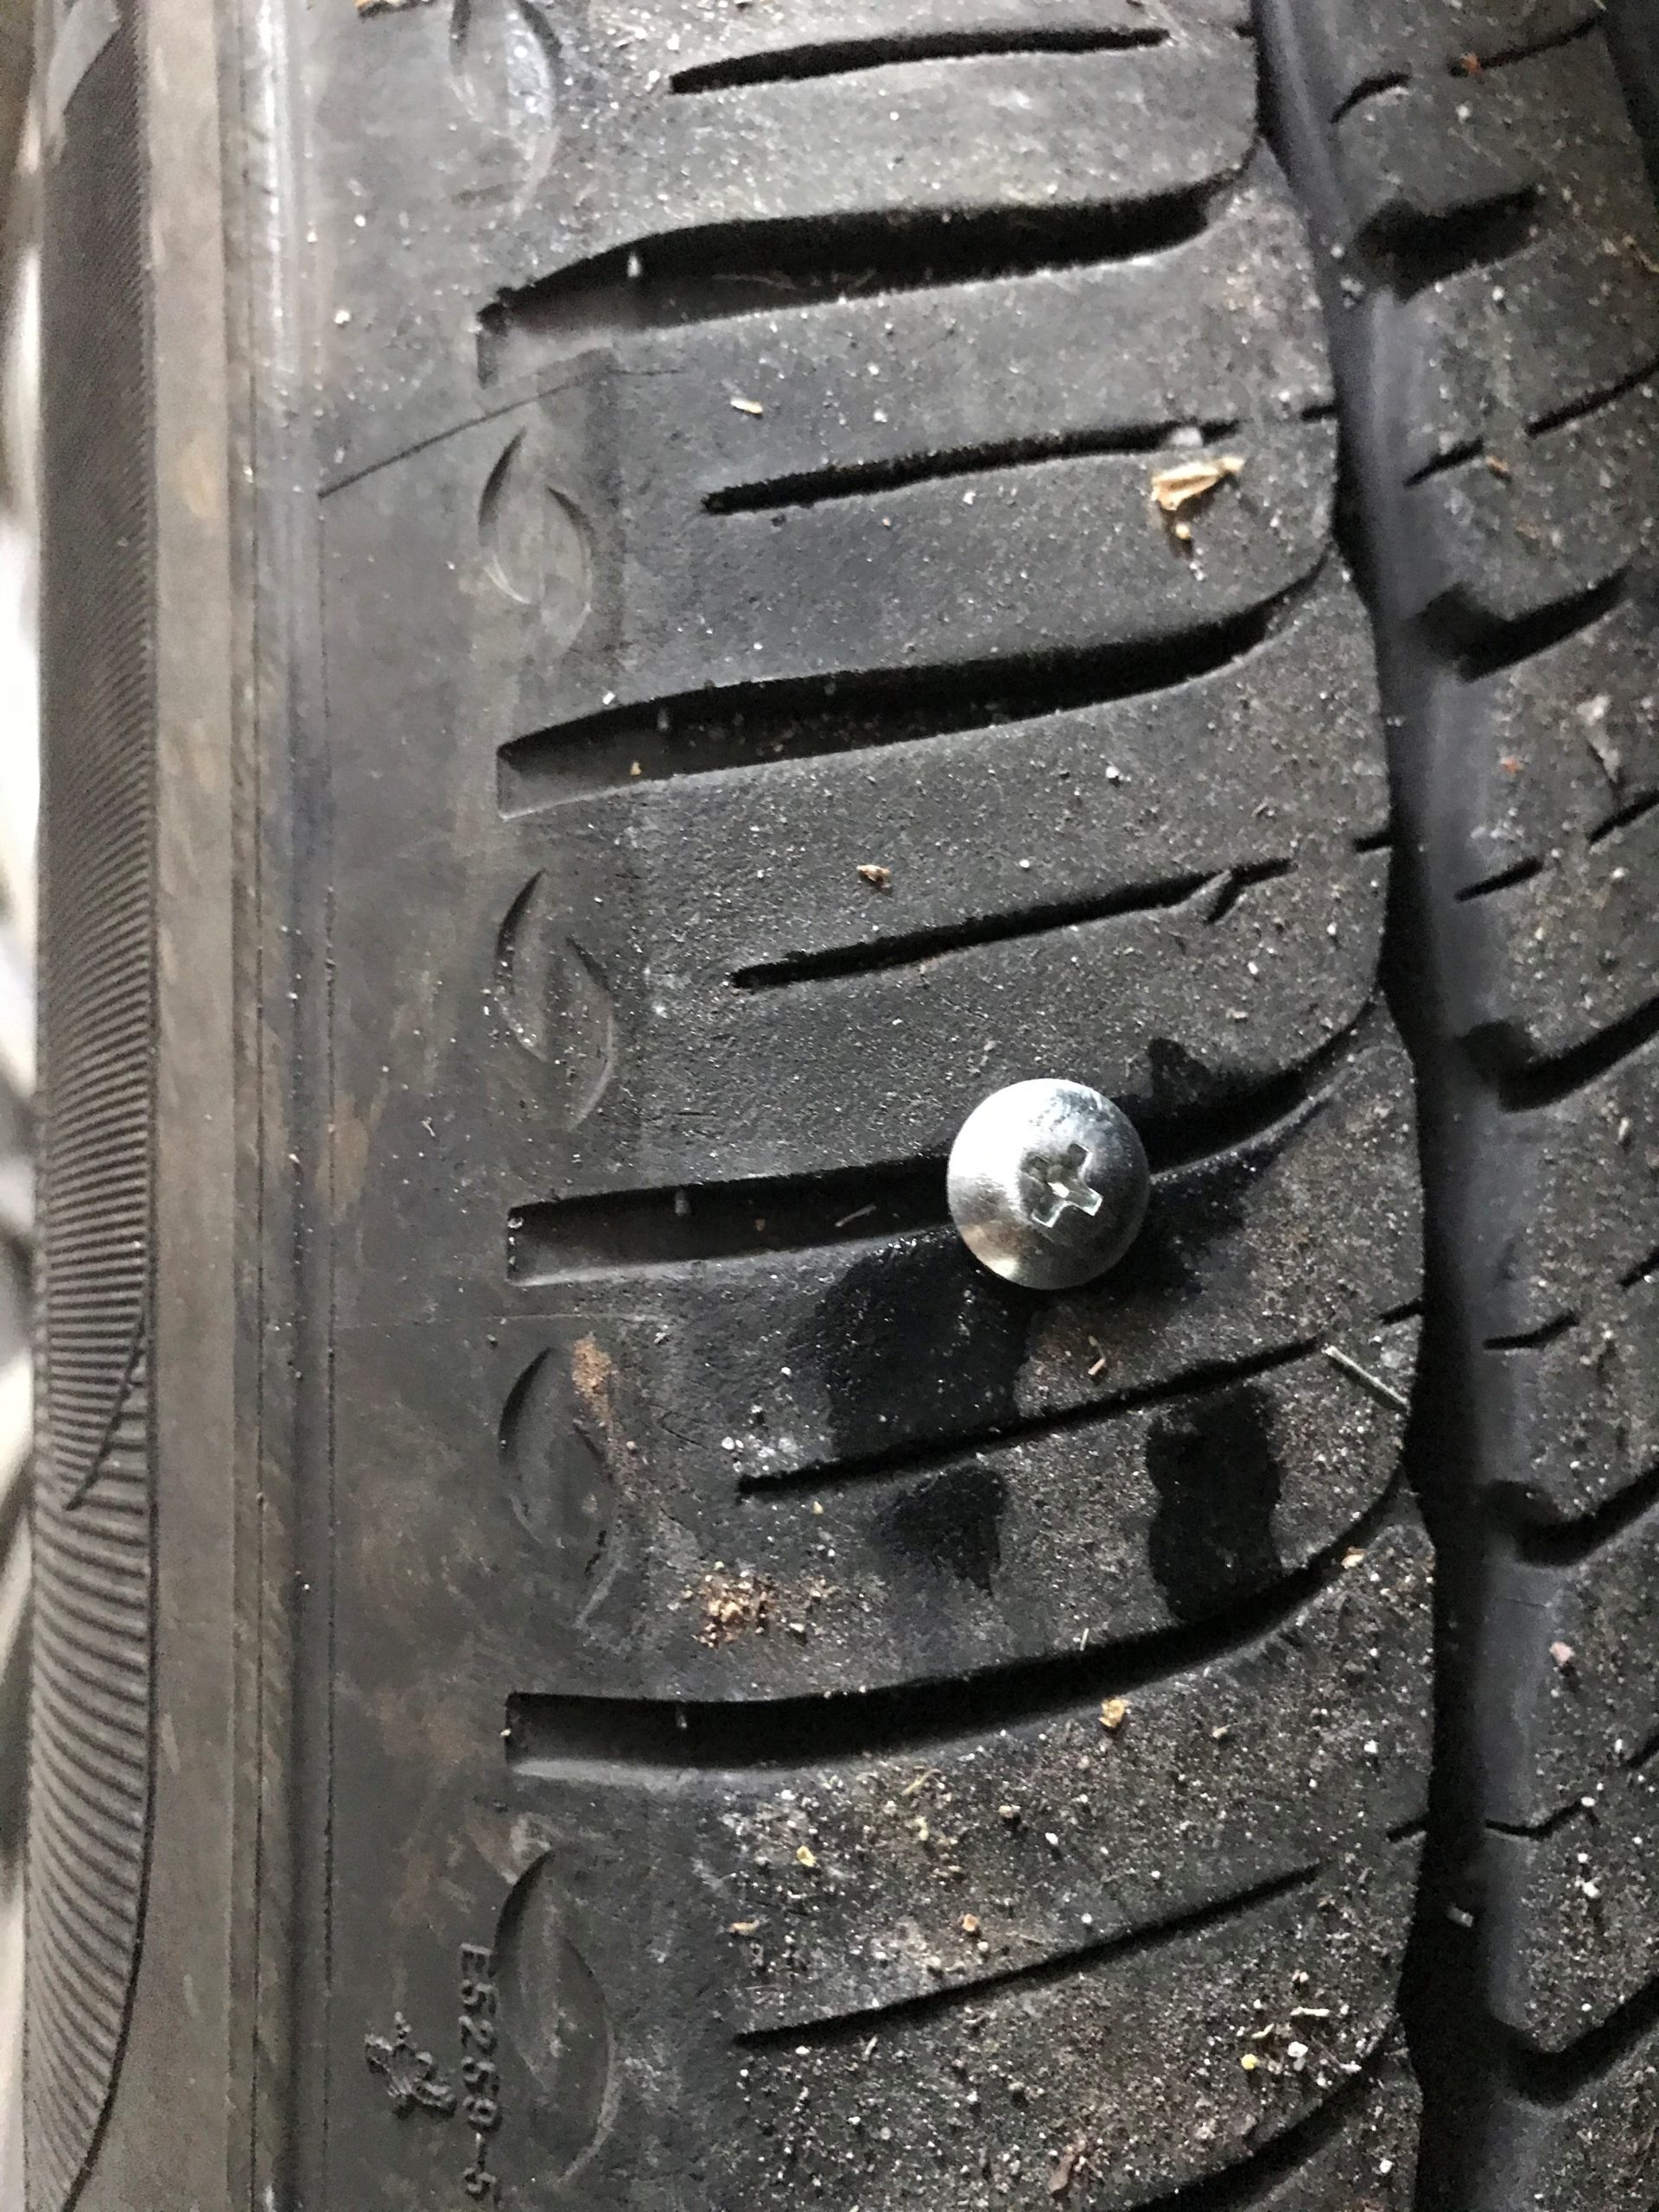 Screw Embedded in Tire